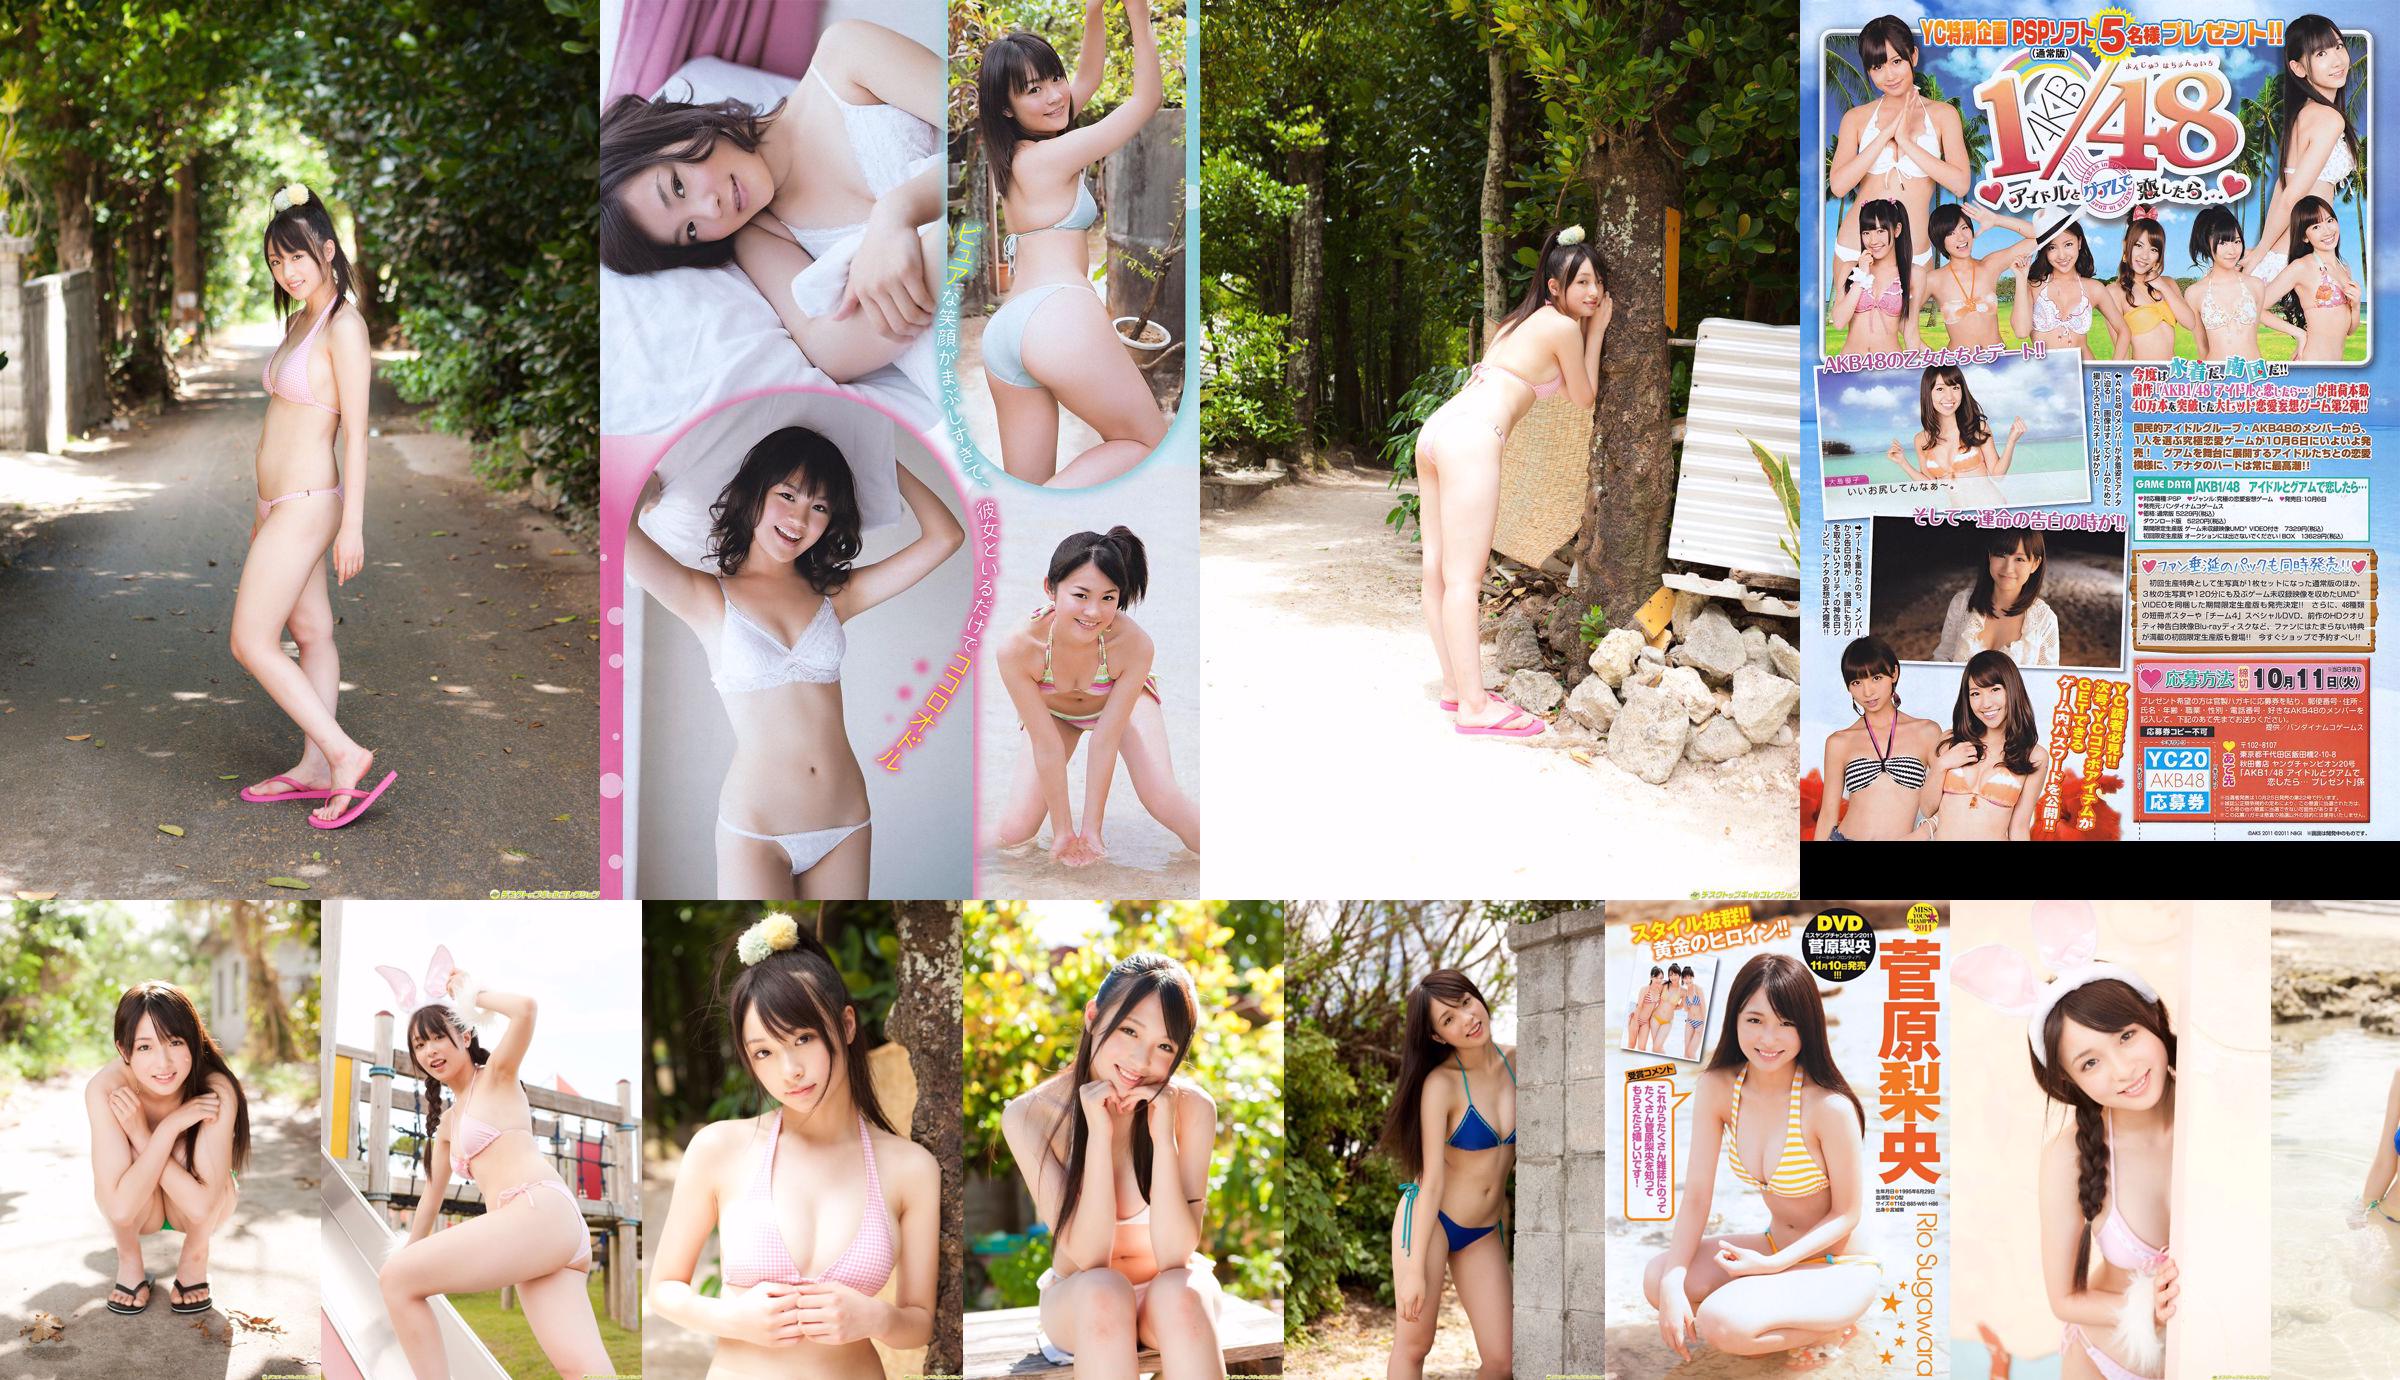 [Jeune Champion] Sugawara Risa, Horikawa Mikako, Matsushima no ou 2011 No. 20 Photo Magazine No.ce9b96 Page 1